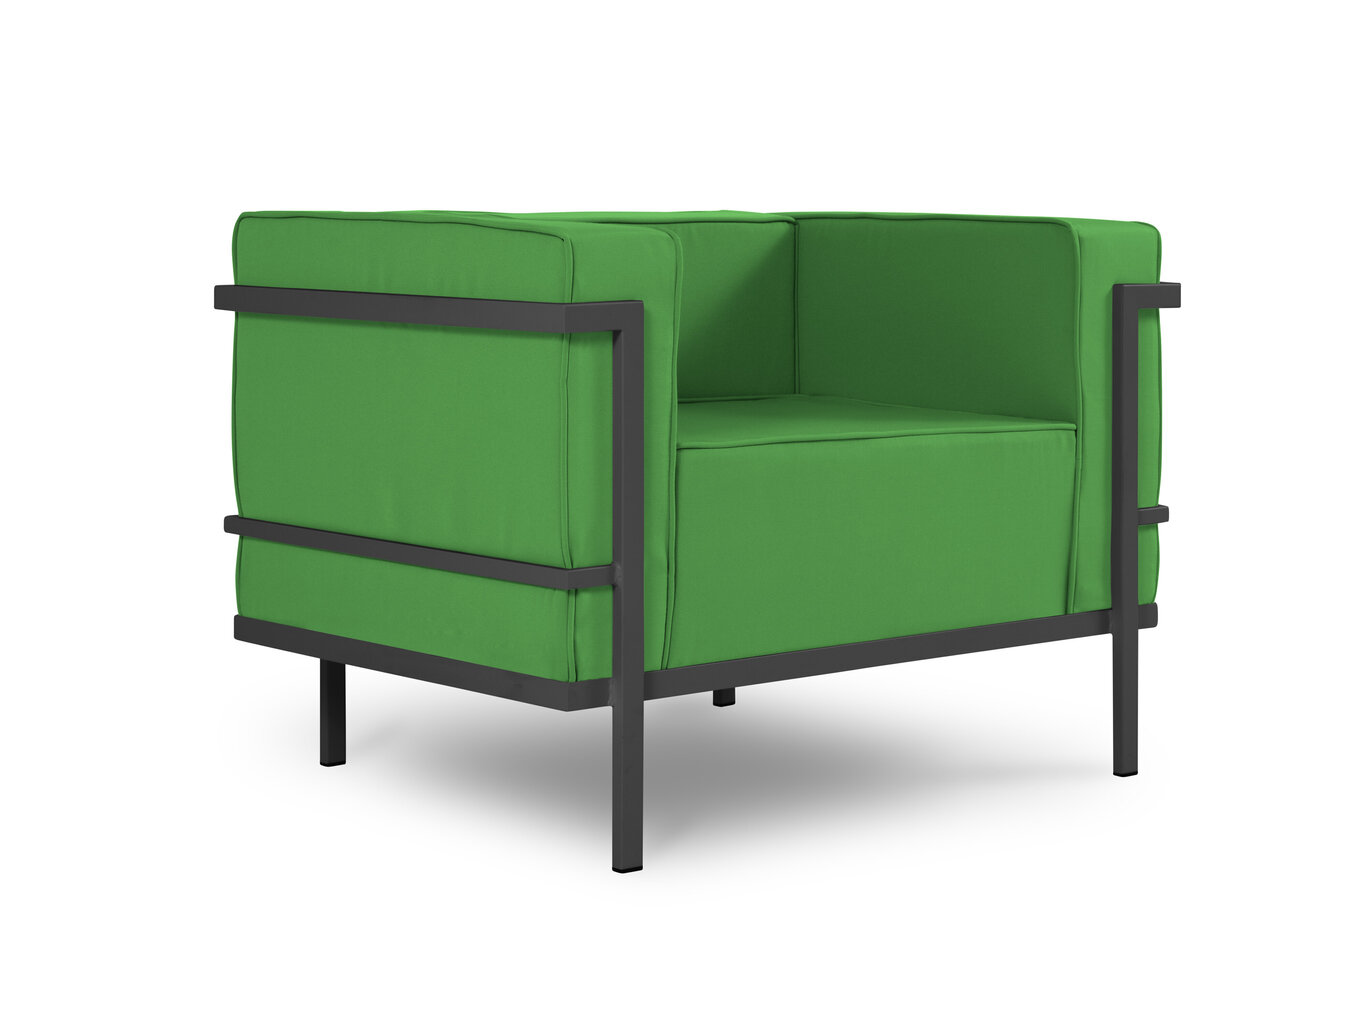 Āra krēsls Calme Jardin Cannes, zaļš/tumši pelēks cena un informācija | Dārza krēsli | 220.lv